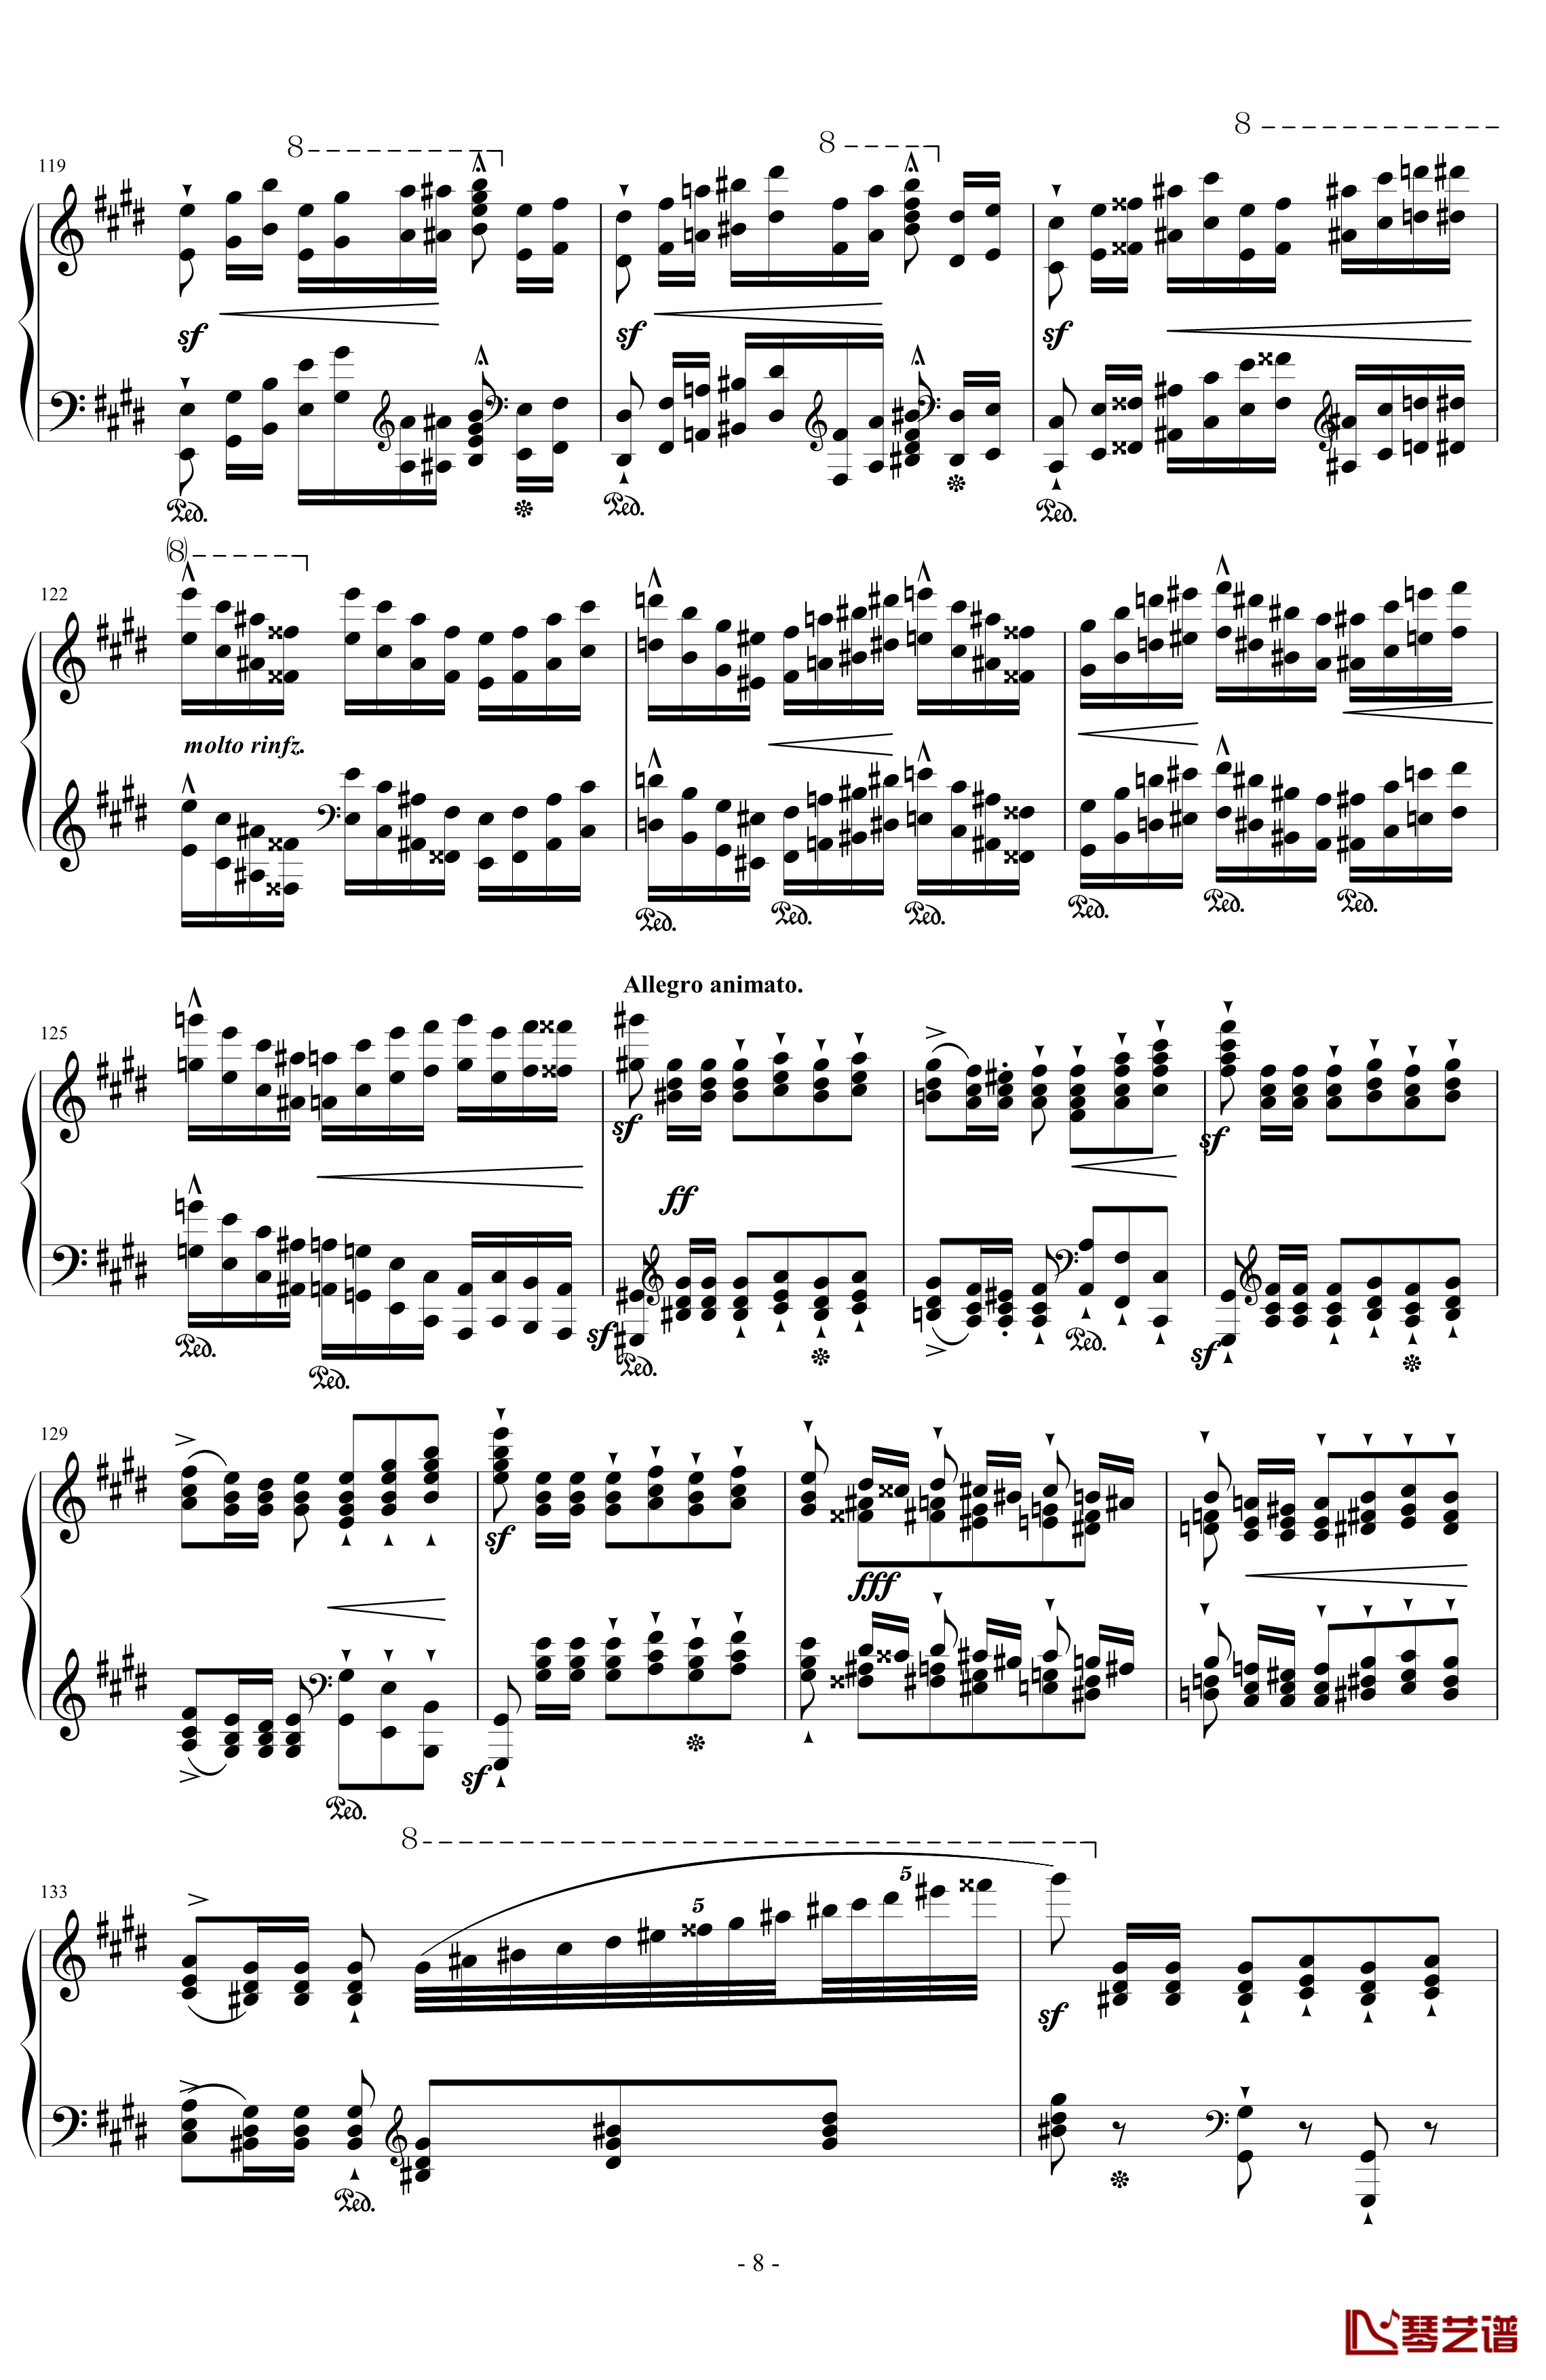 西班牙狂想曲钢琴谱-难度极高的炫技大作-李斯特8